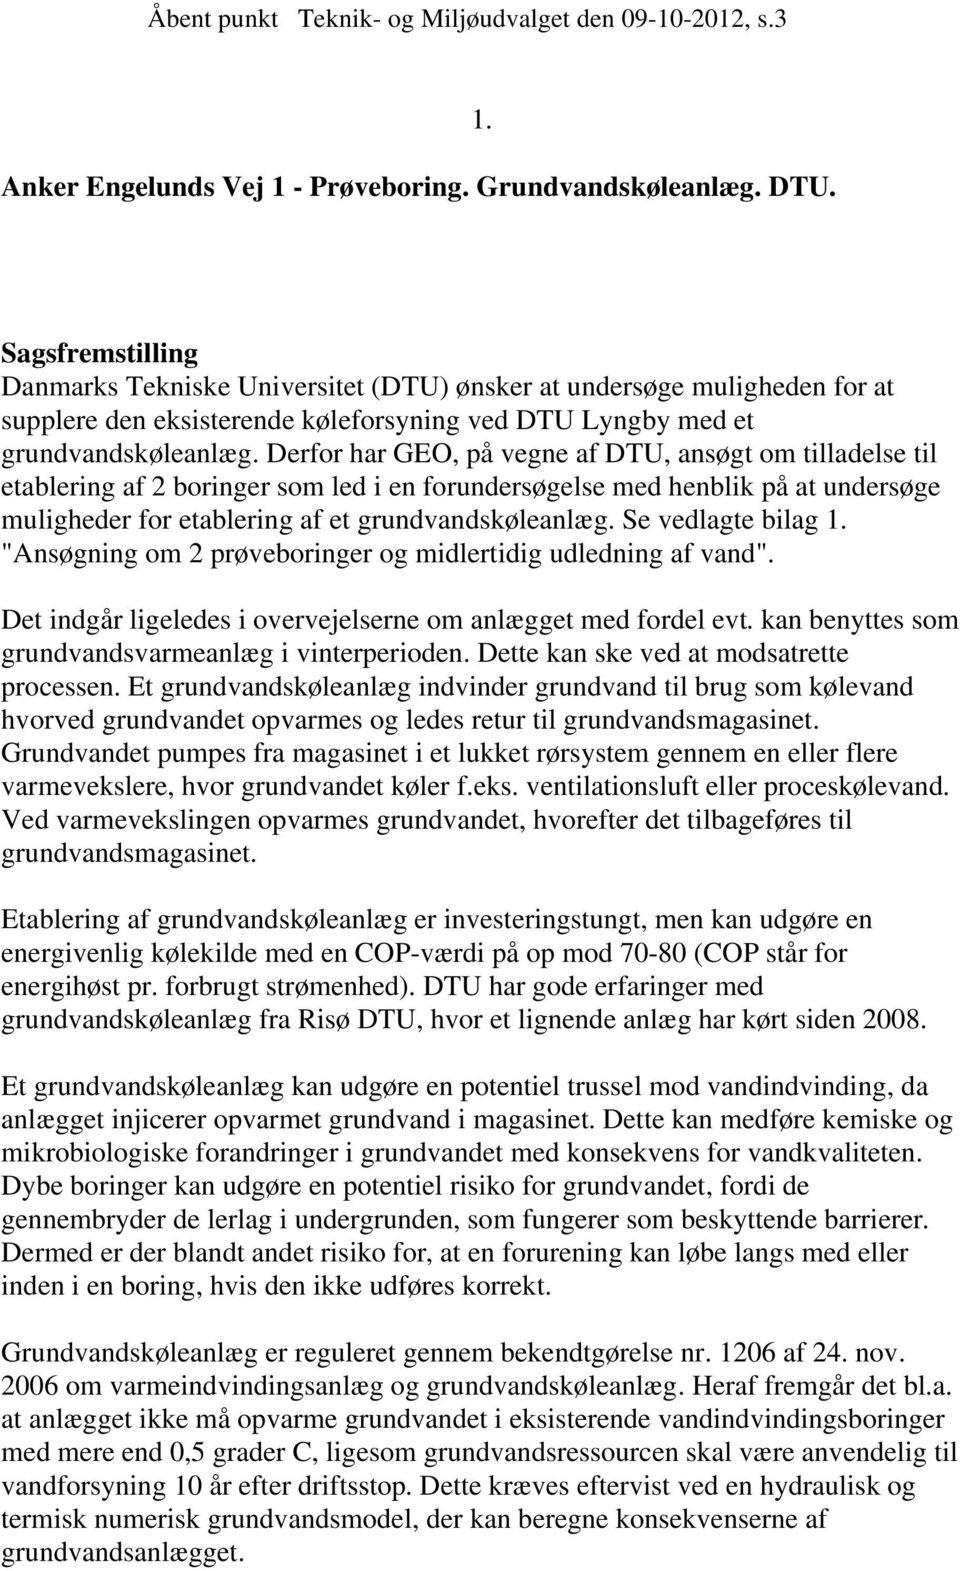 Sagsfremstilling Danmarks Tekniske Universitet (DTU) ønsker at undersøge muligheden for at supplere den eksisterende køleforsyning ved DTU Lyngby med et grundvandskøleanlæg.